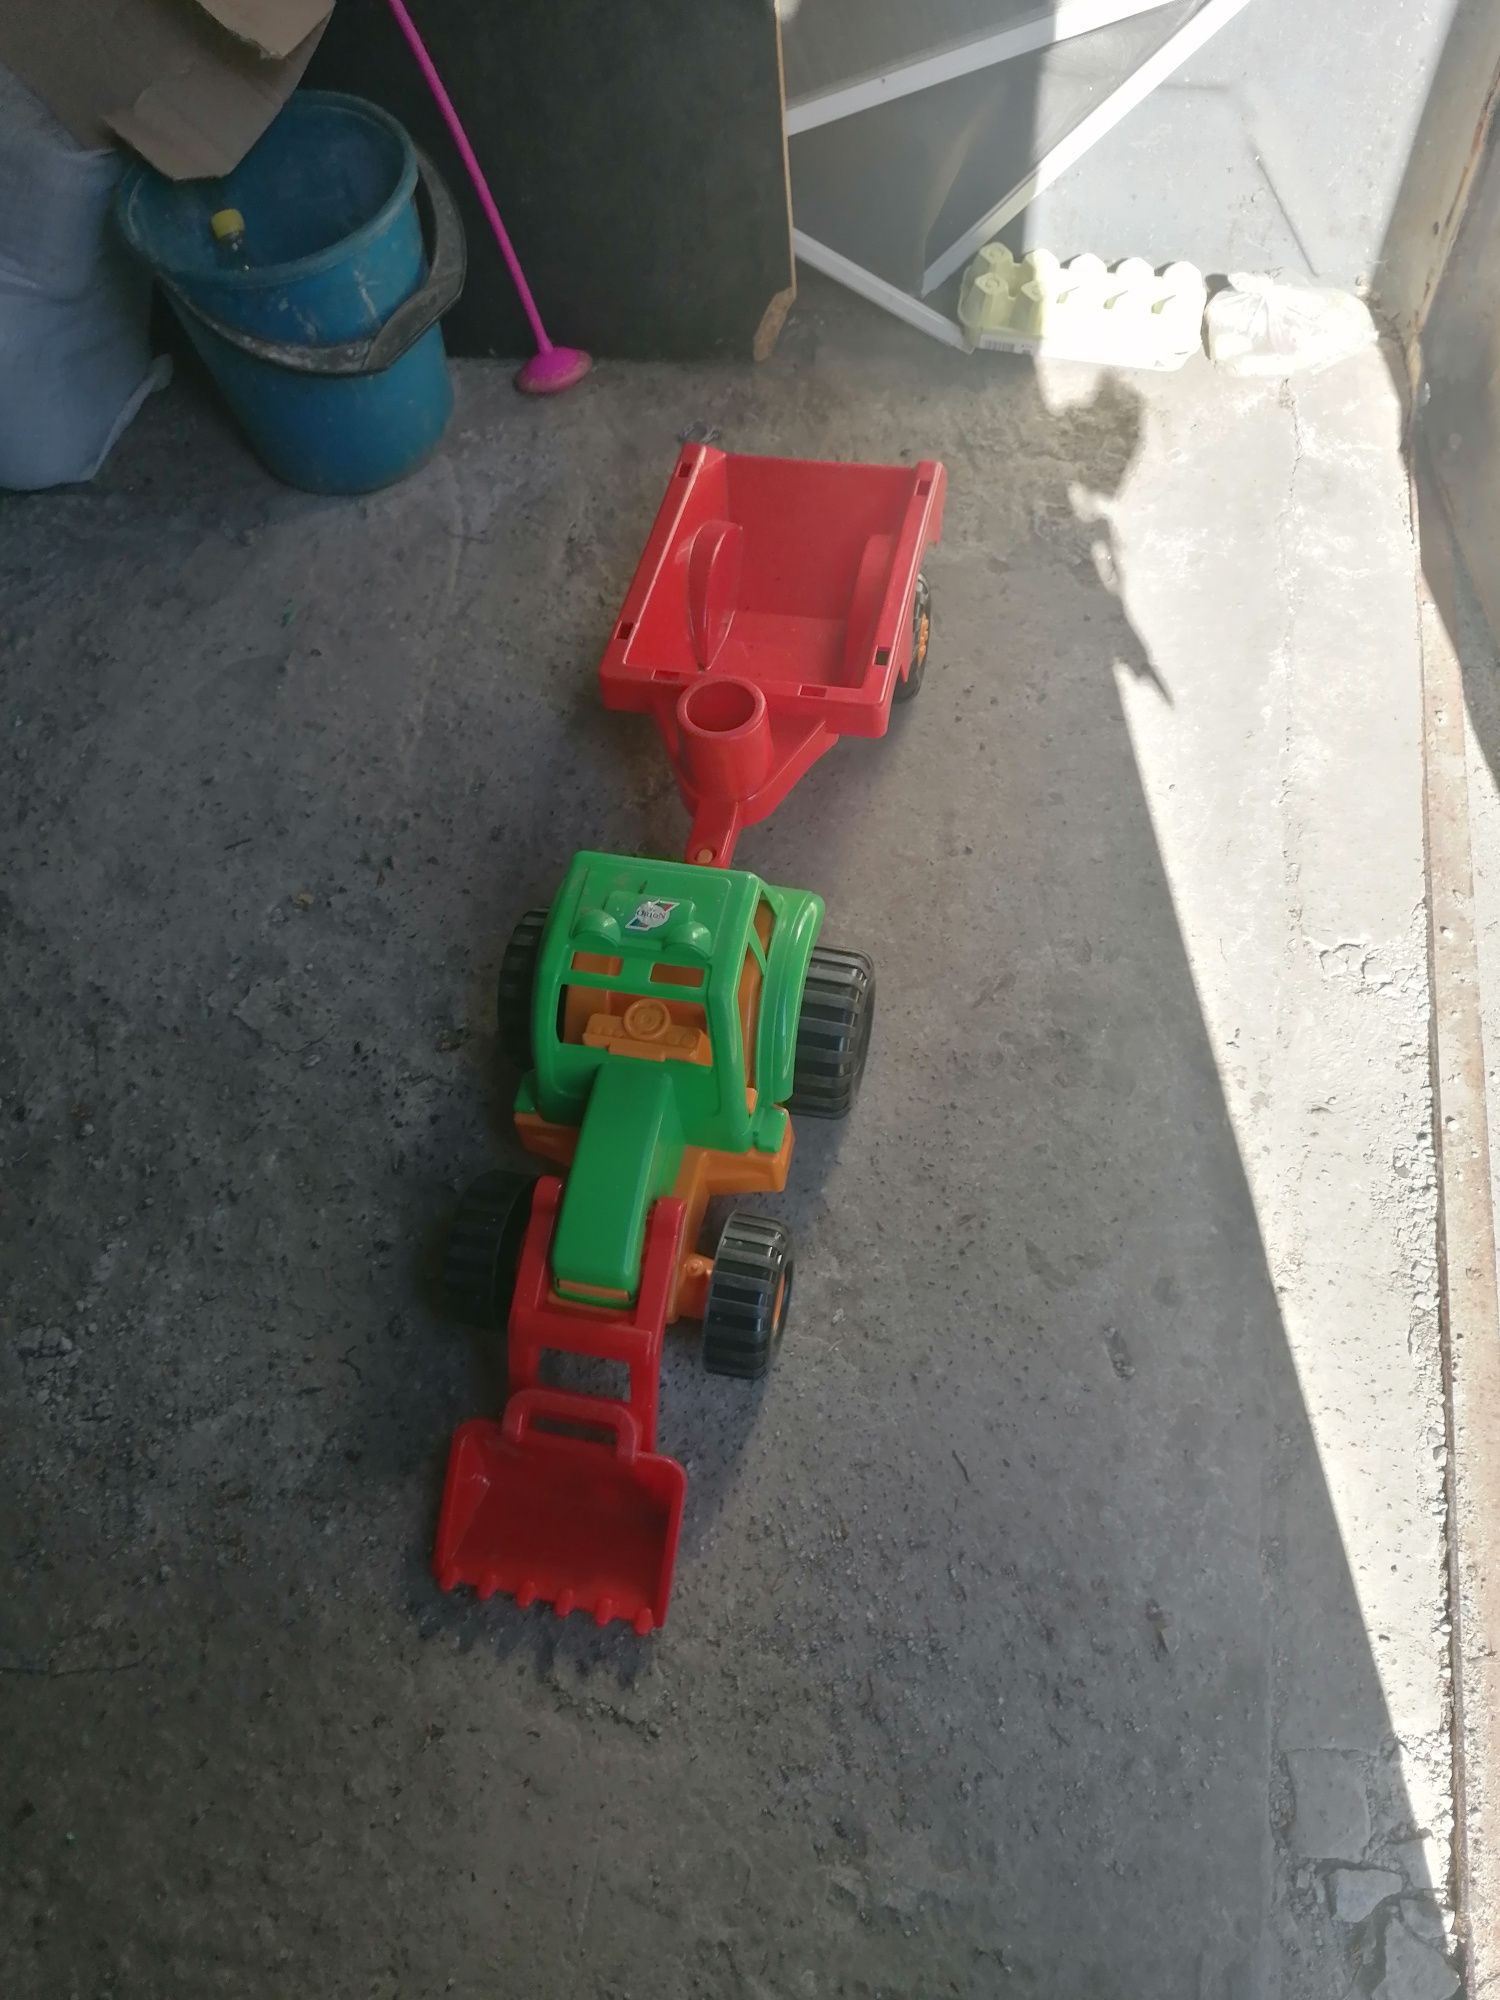 Игрушка трактор с прицепом